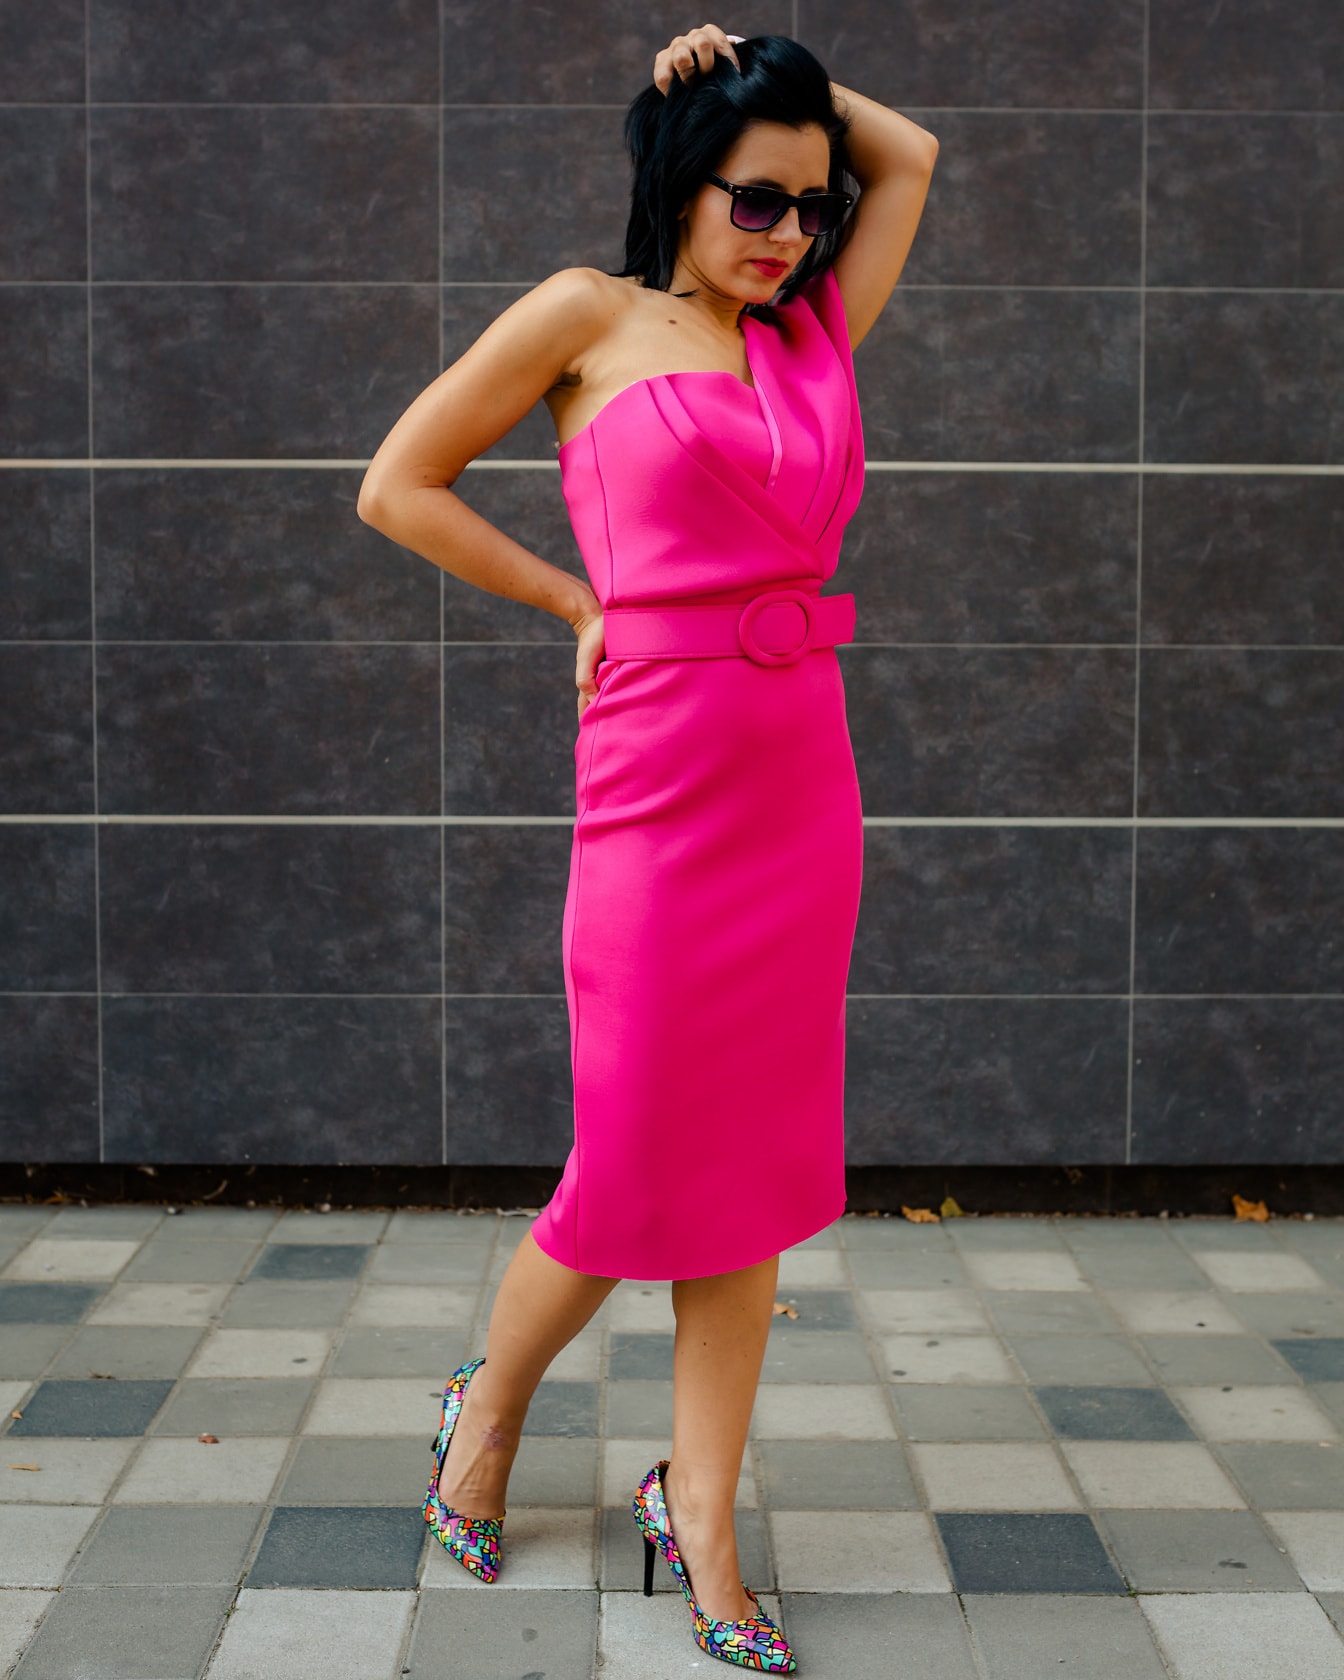 Wunderschönes junges Fotomodell posiert in einem leuchtend rosa Kleid